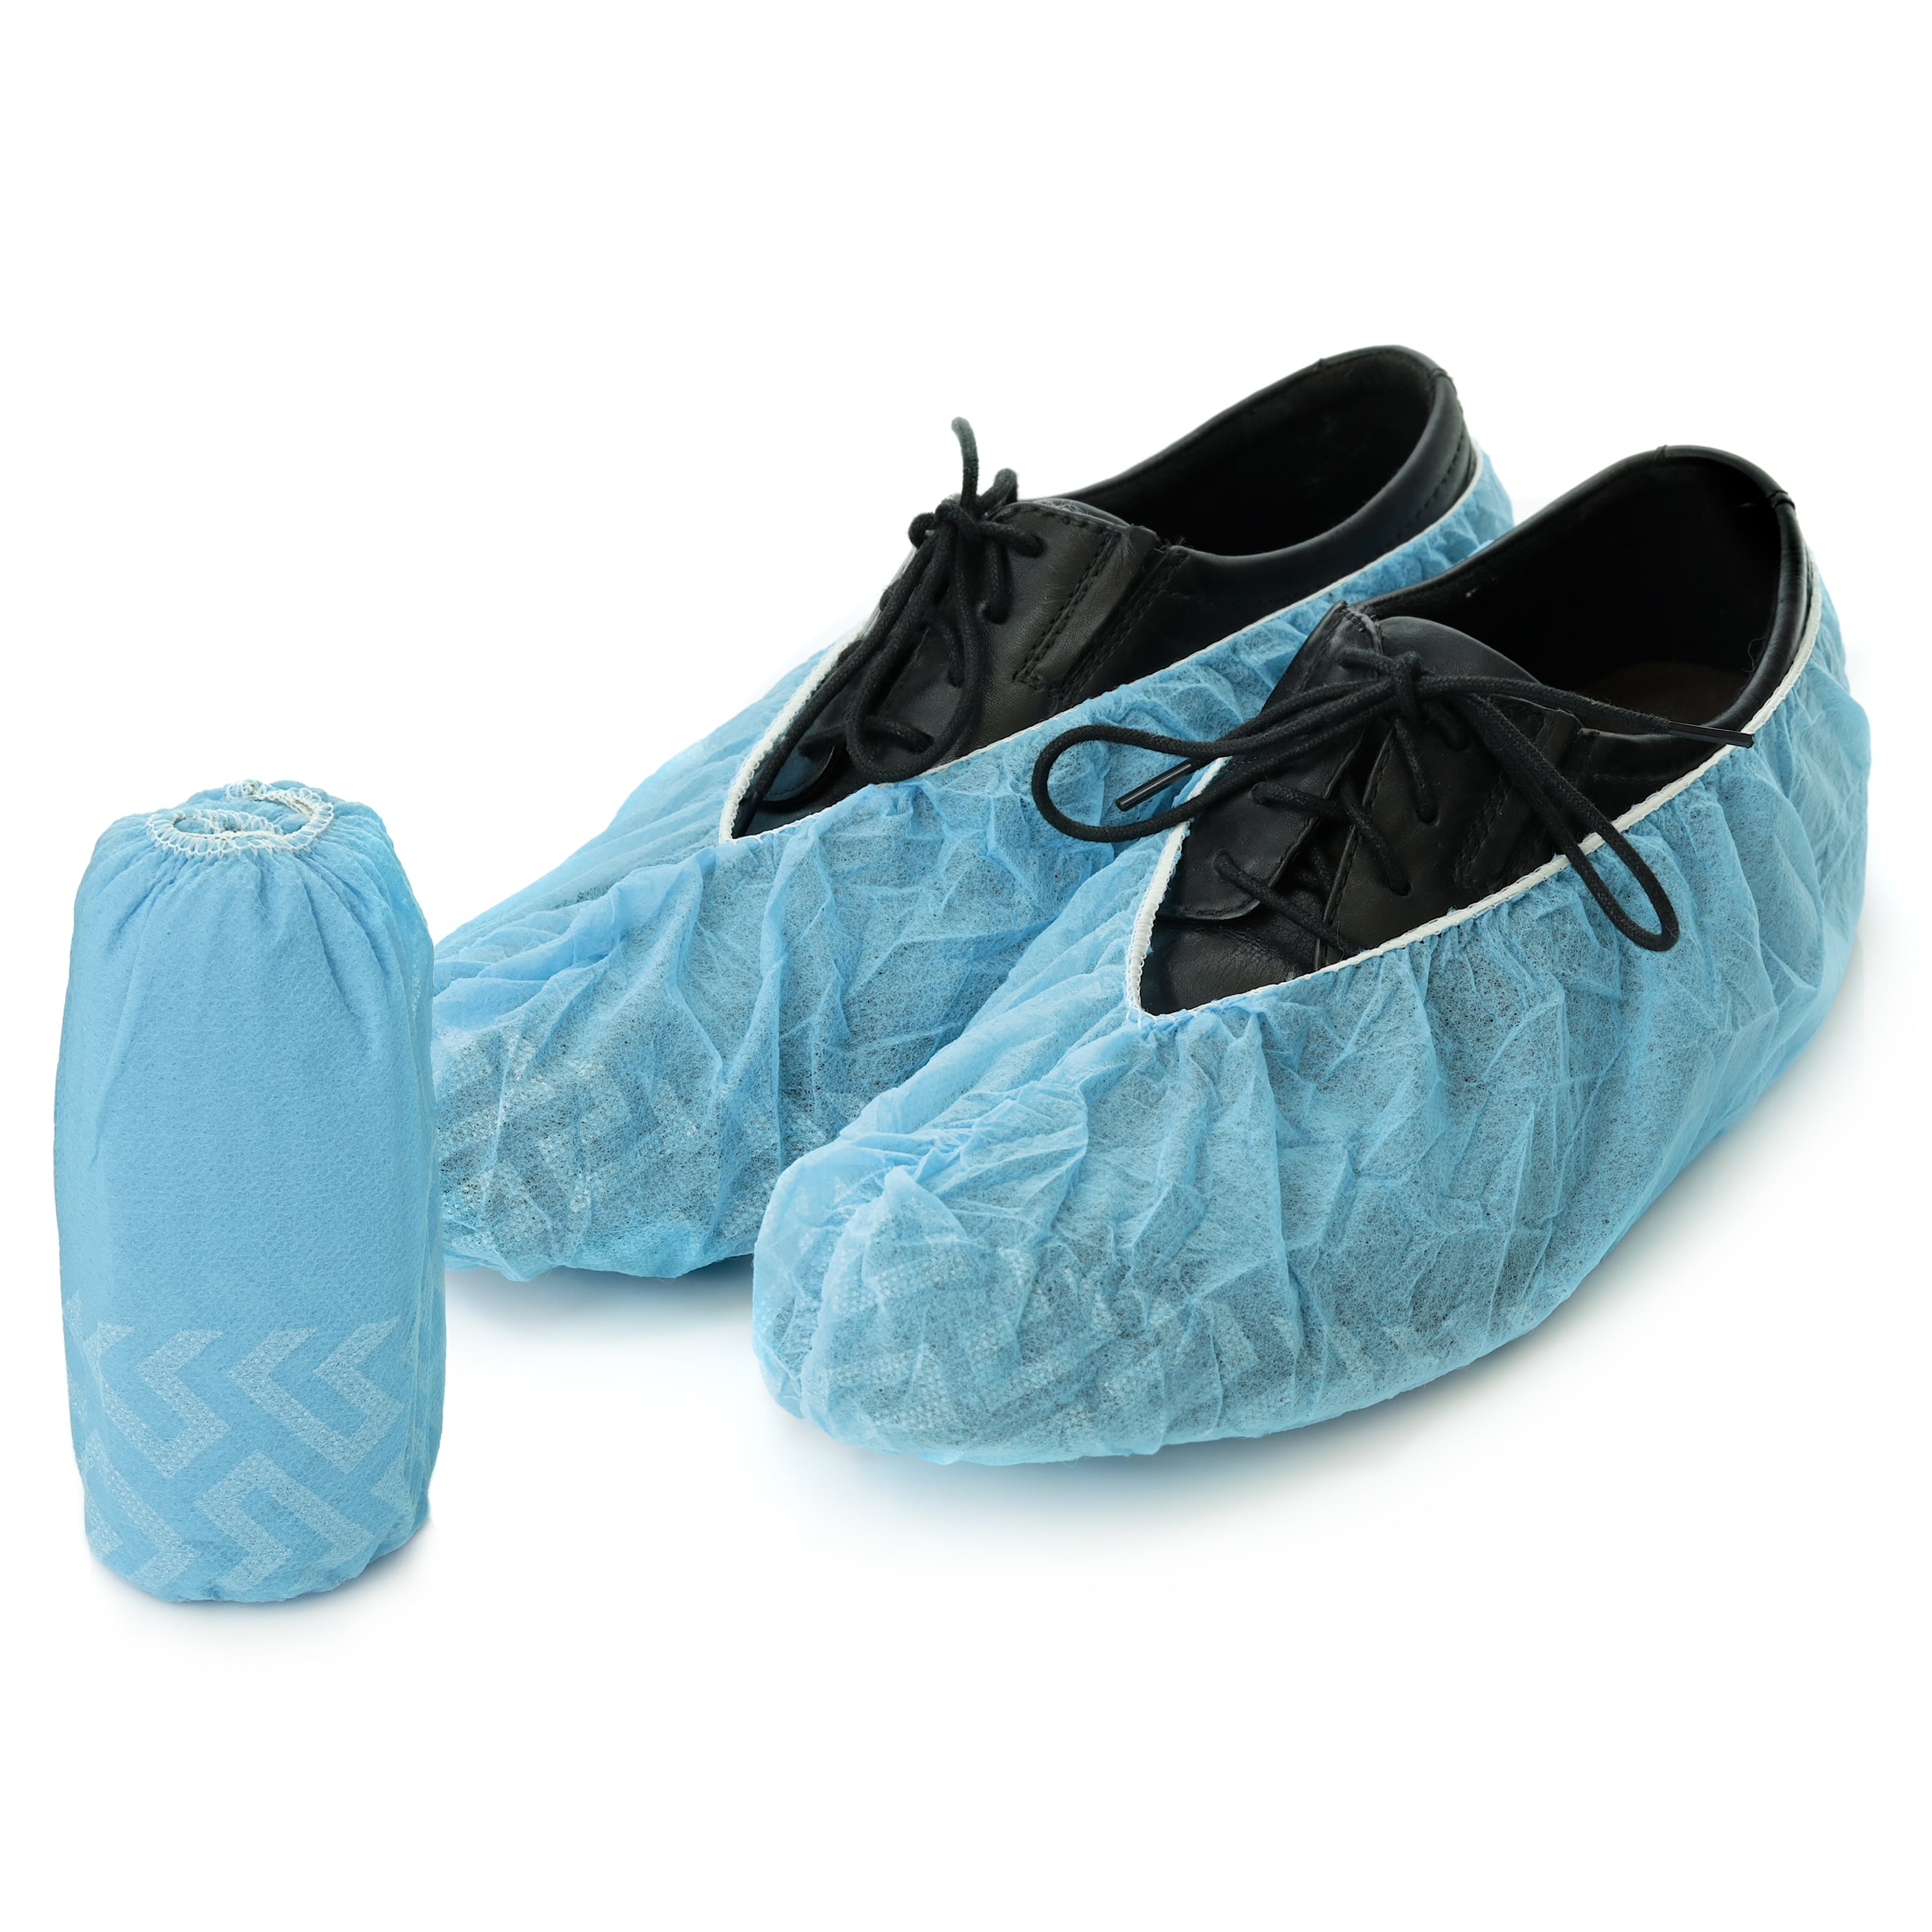 100 Pieces Disposable Shoe Covers 50 Pairs Non-woven Shoe Covers Indoor Shoe Covers Boot Covers for Kids Women Men 